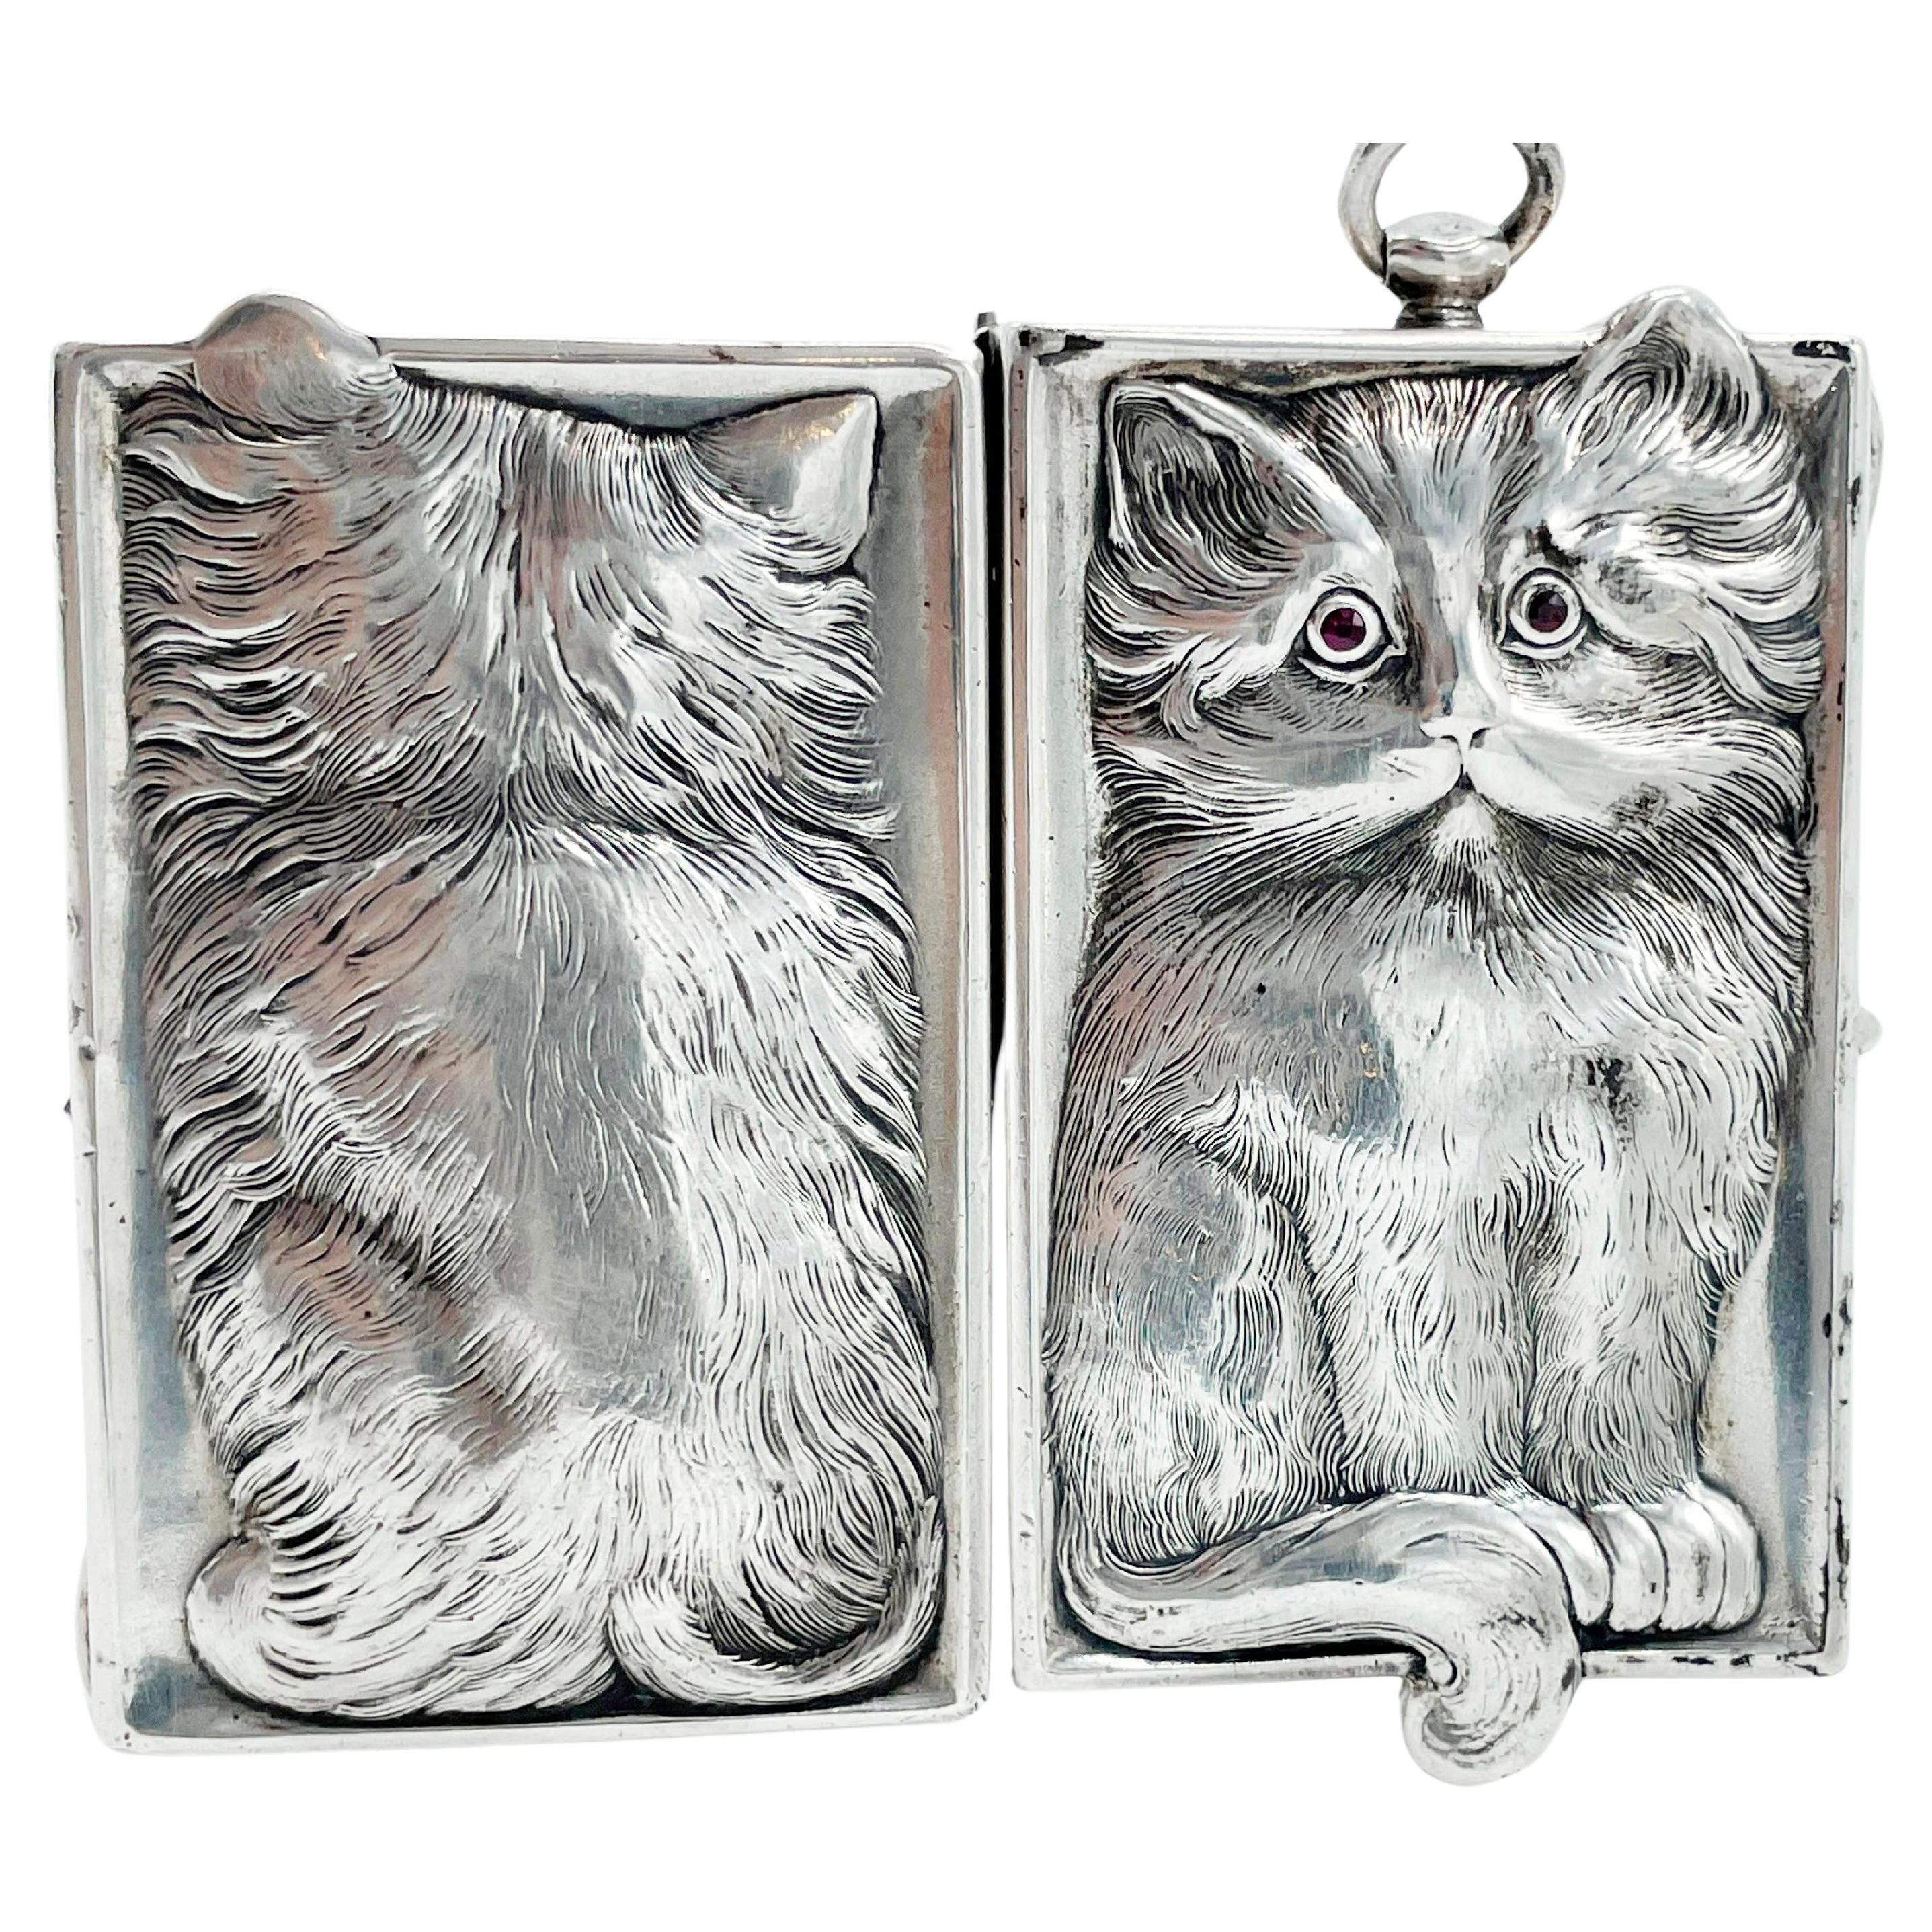 Antique miroir compact Louis Kuppenheim Silver Cat Kitten